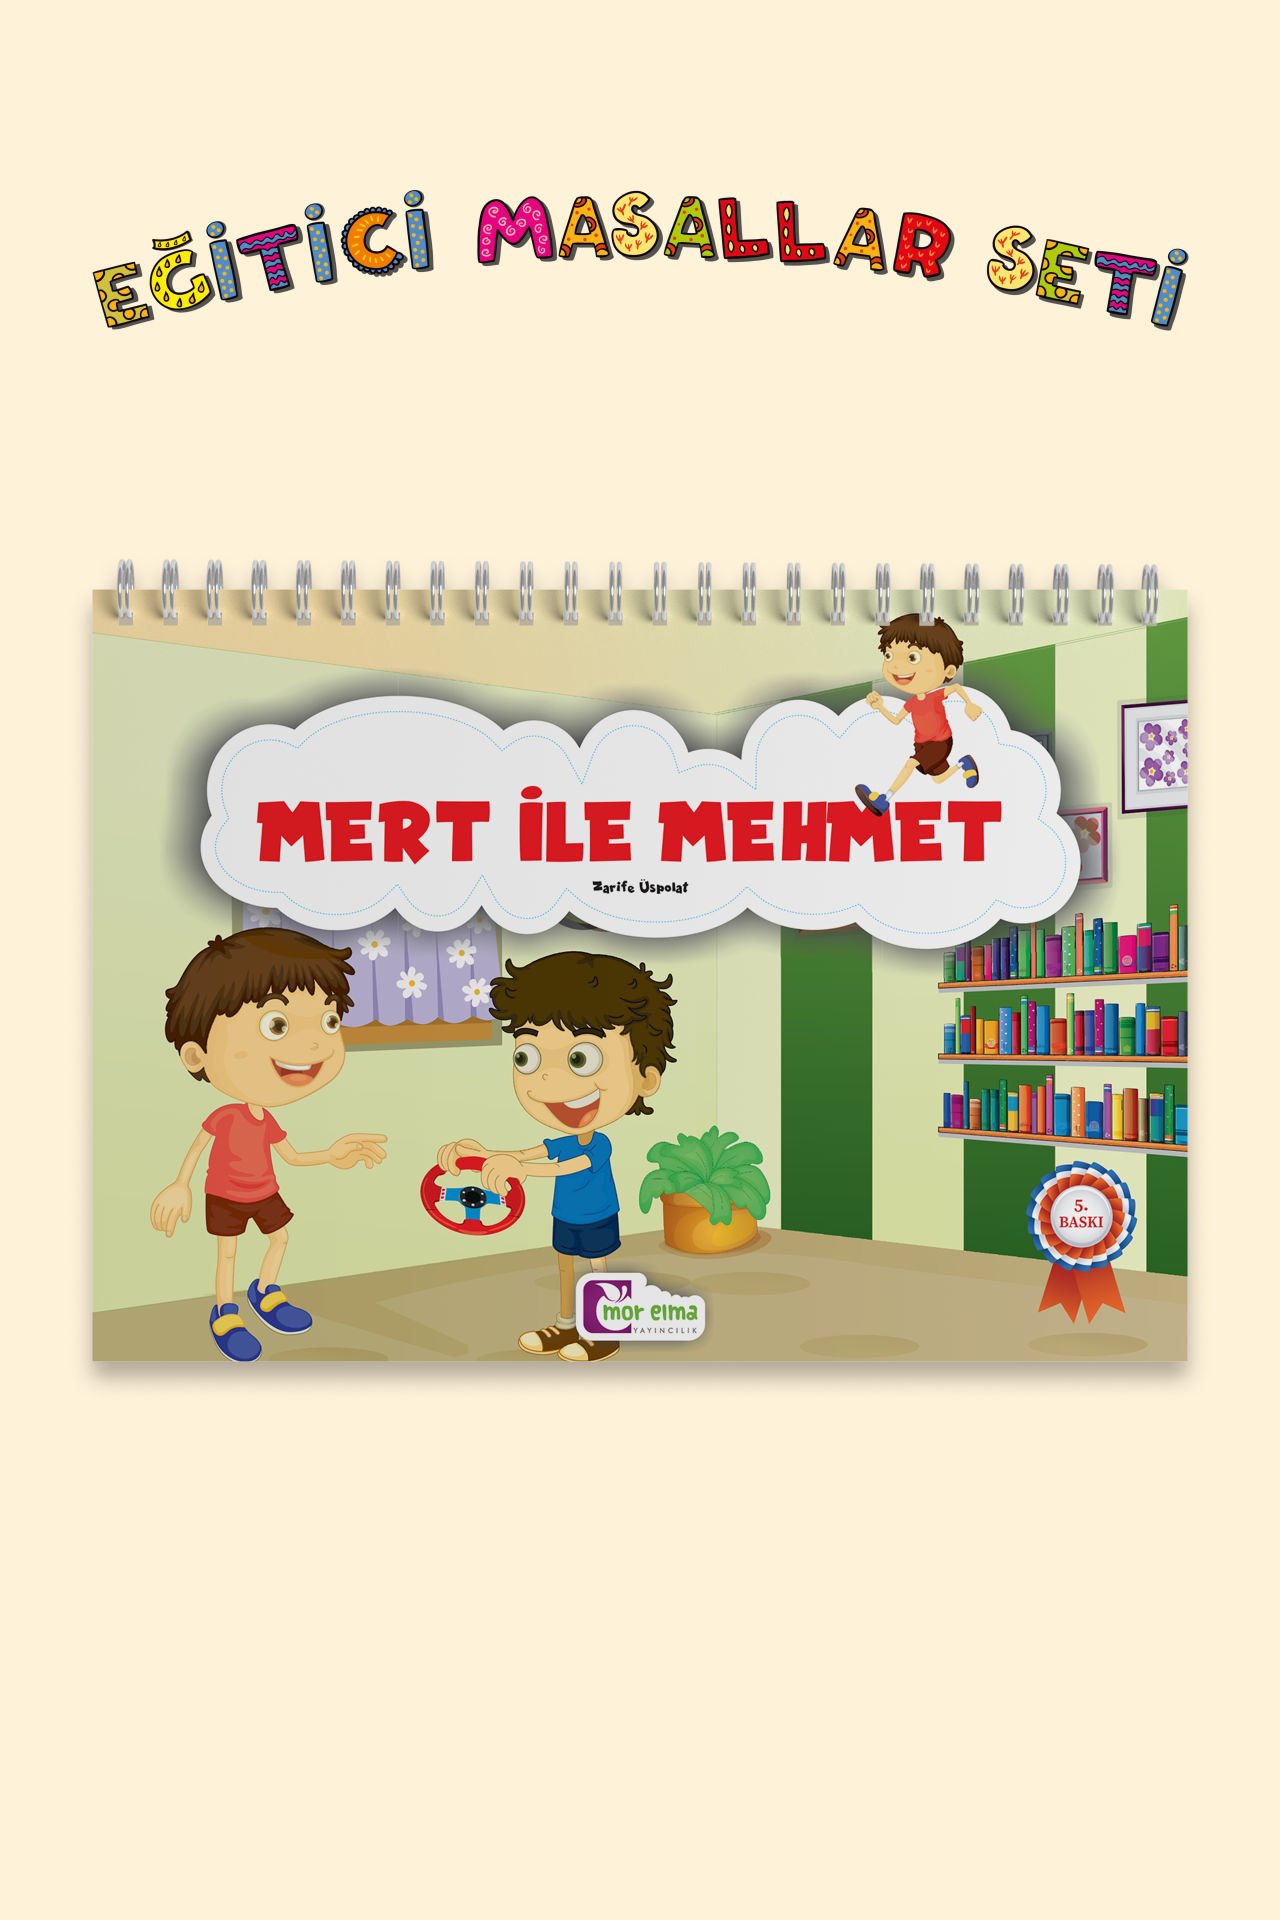 Mert and Mehmet